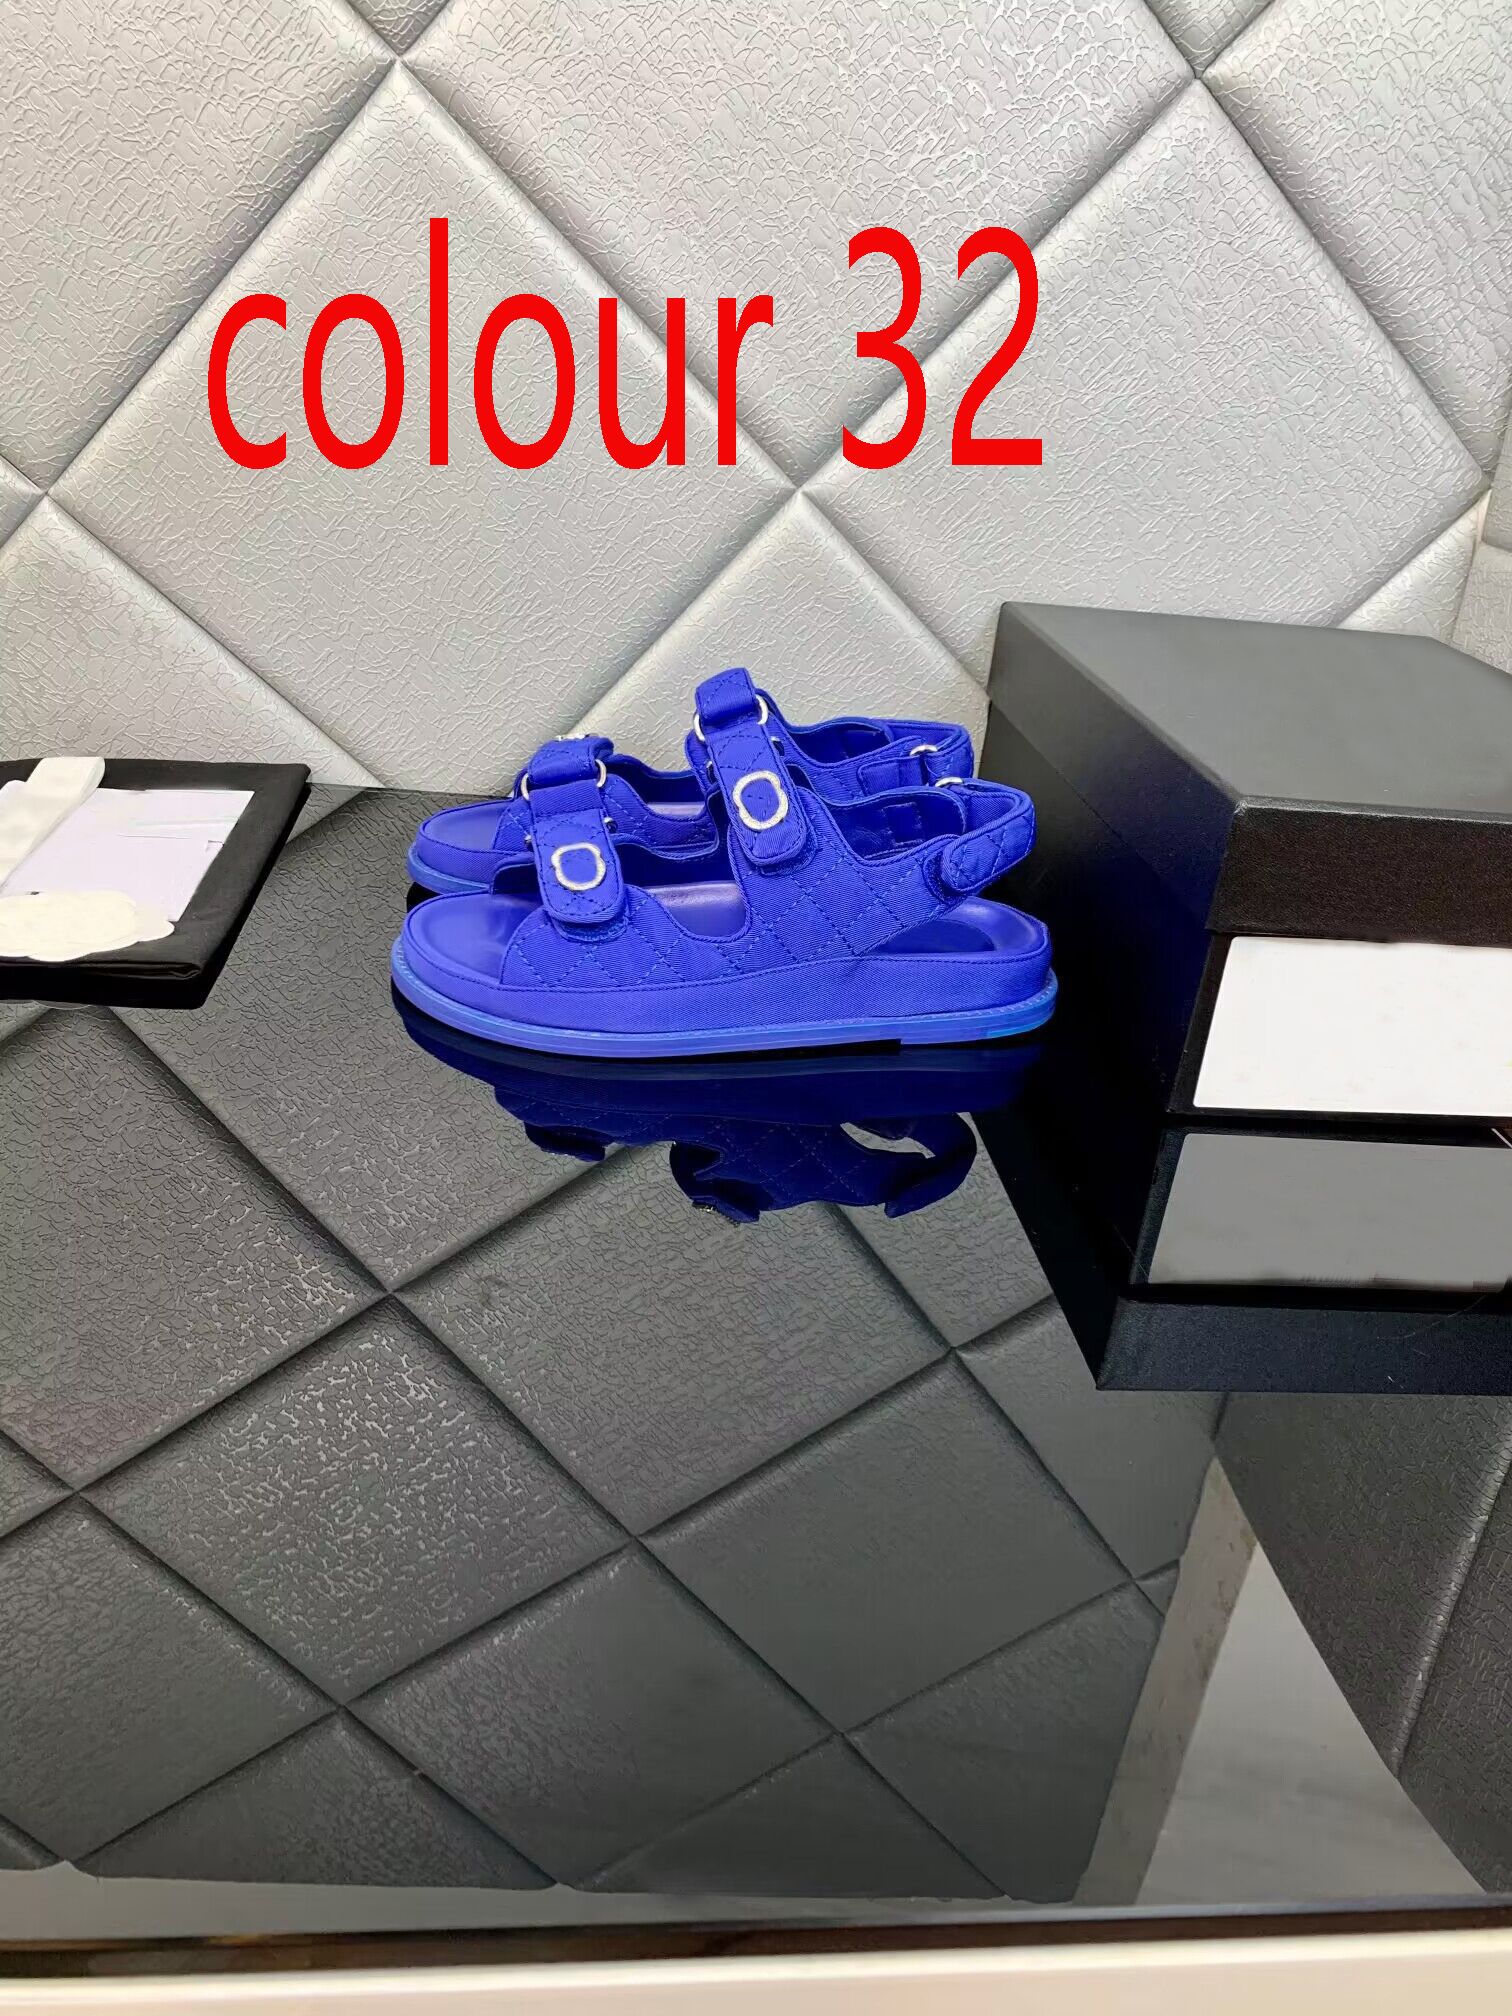 colour 32